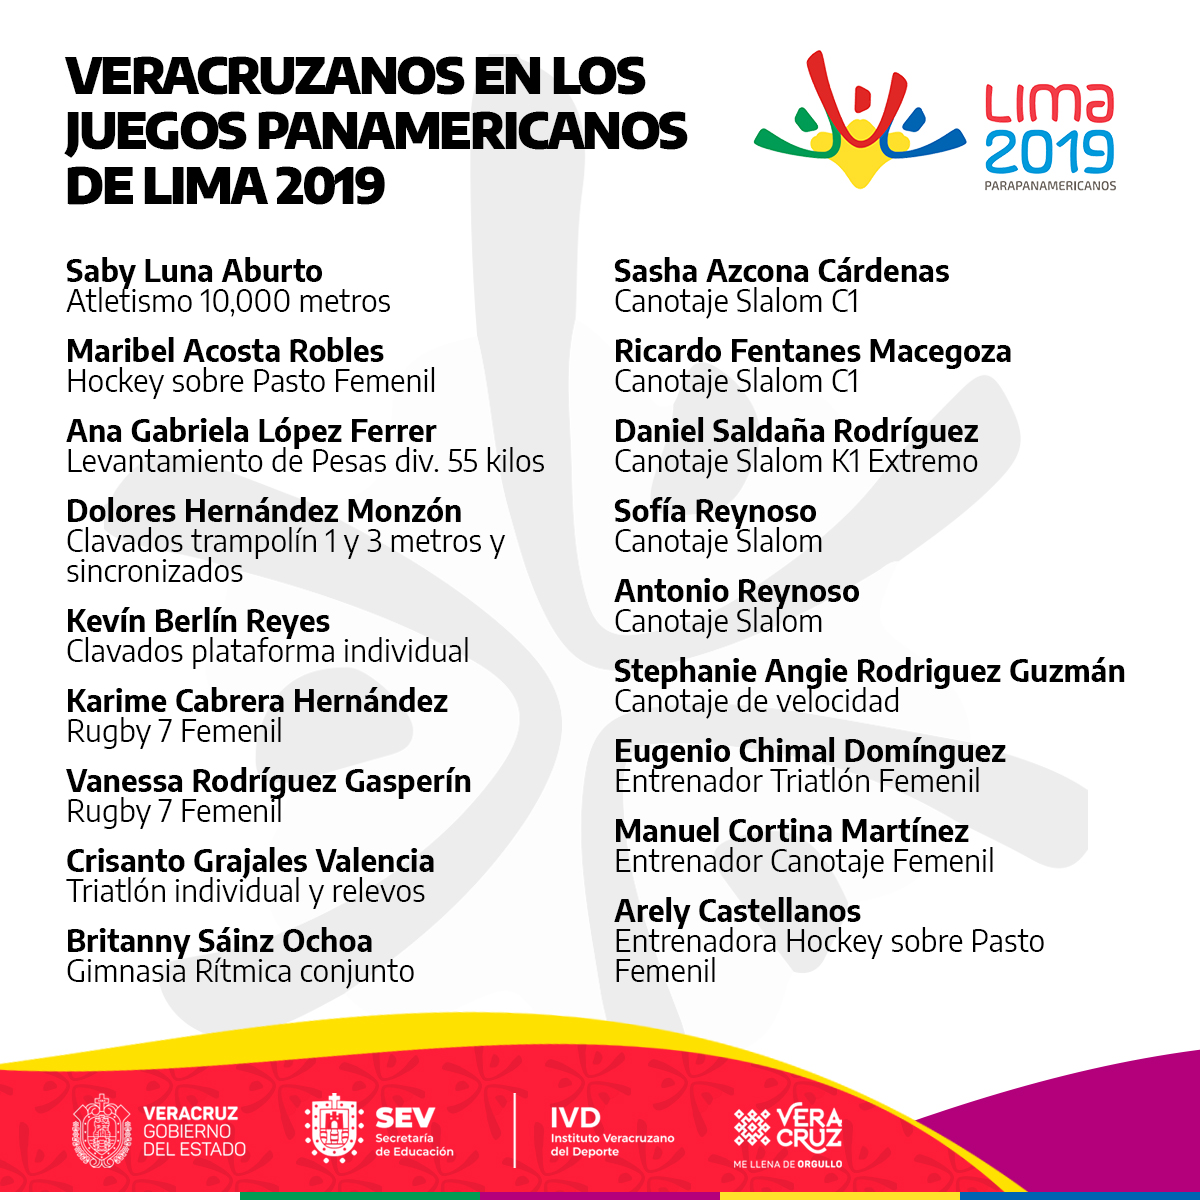 15 veracruzanos verán acción en Panamericanos de Lima 2019